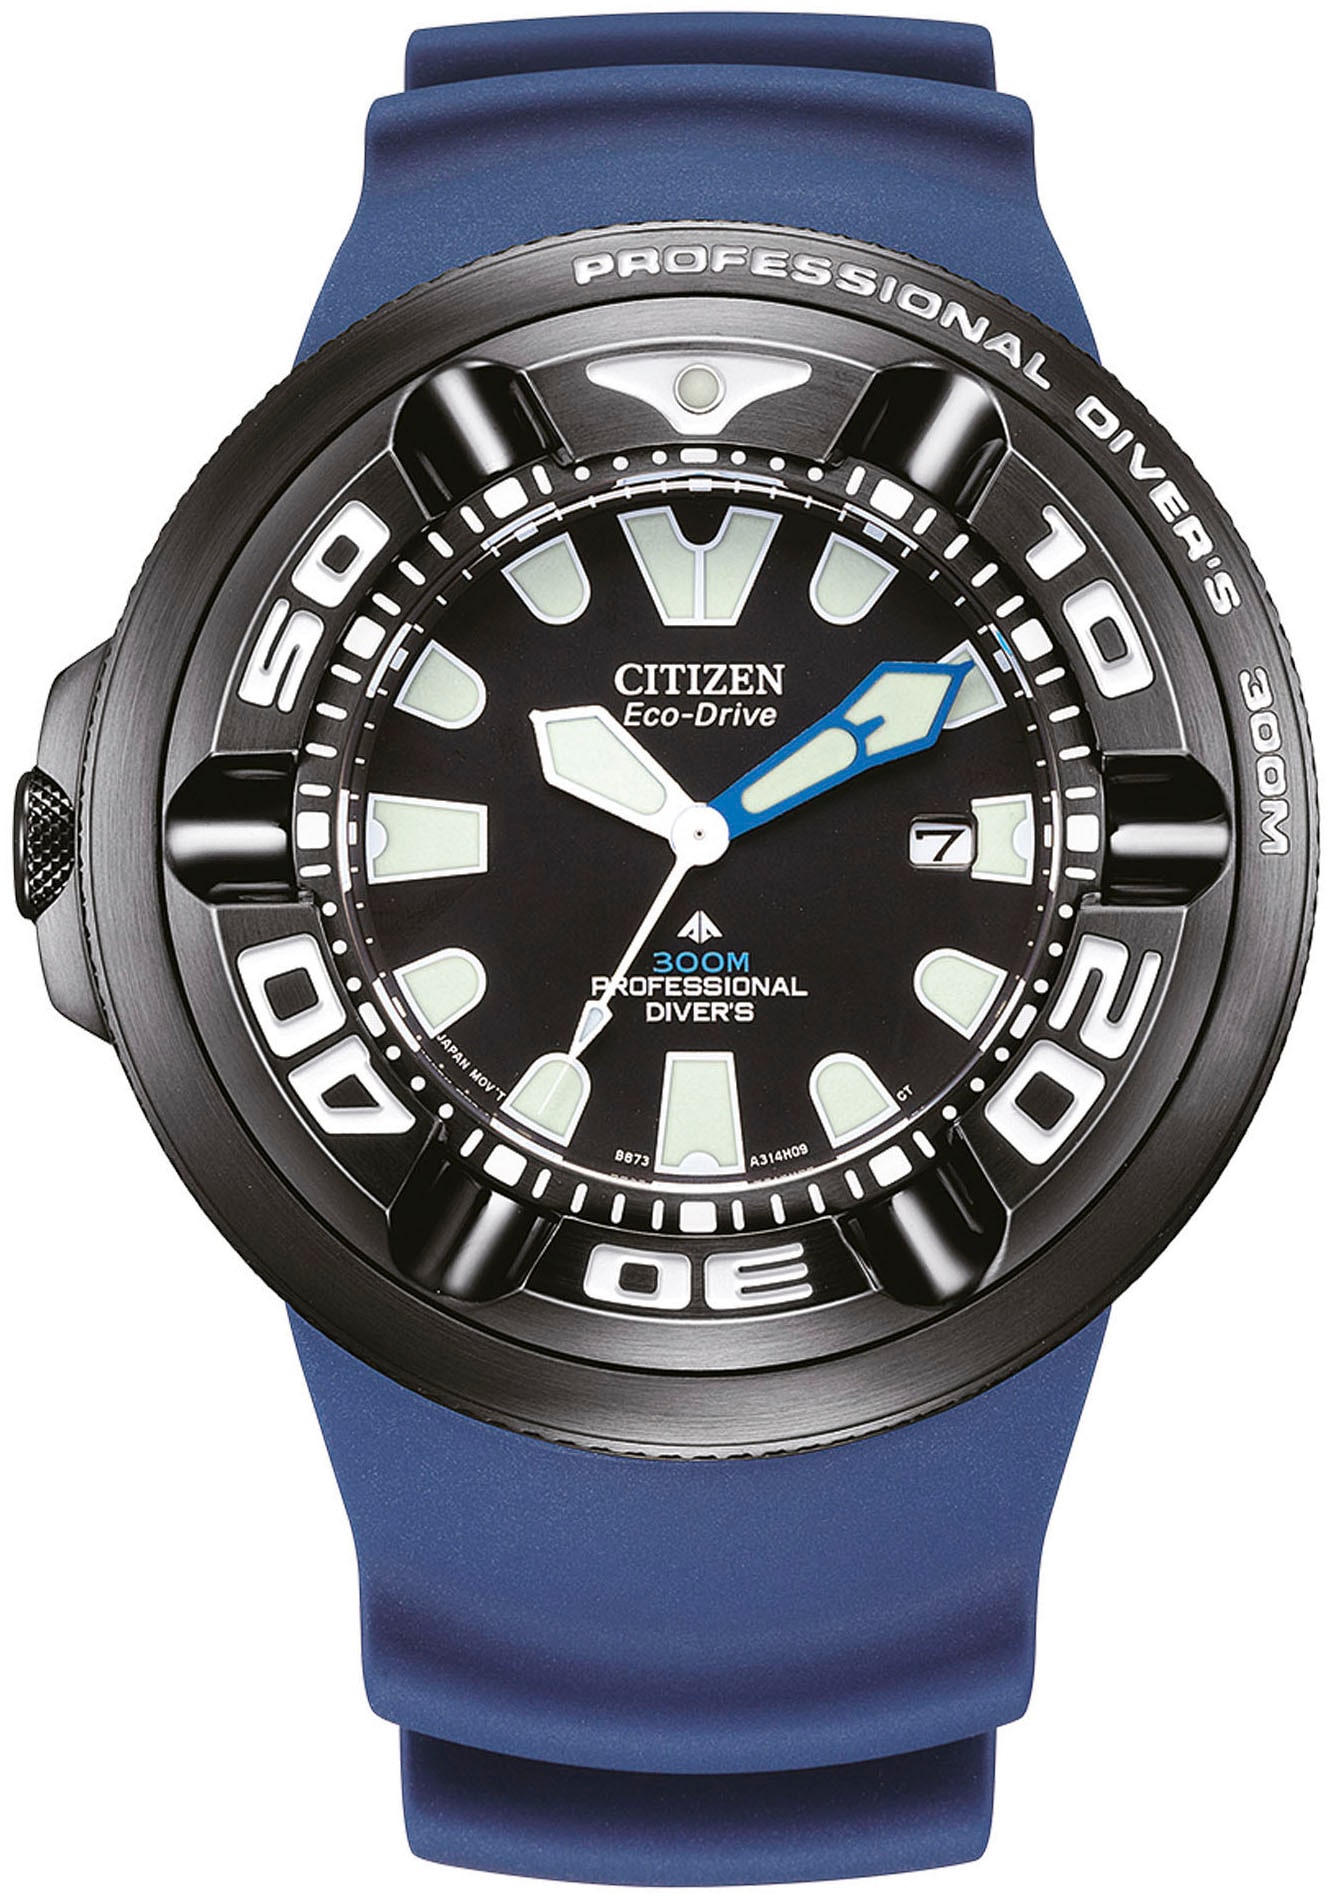 Citizen Taucheruhr »Promaster Professional Diver 300«, Armbanduhr, Herrenuhr, Solar, Datum